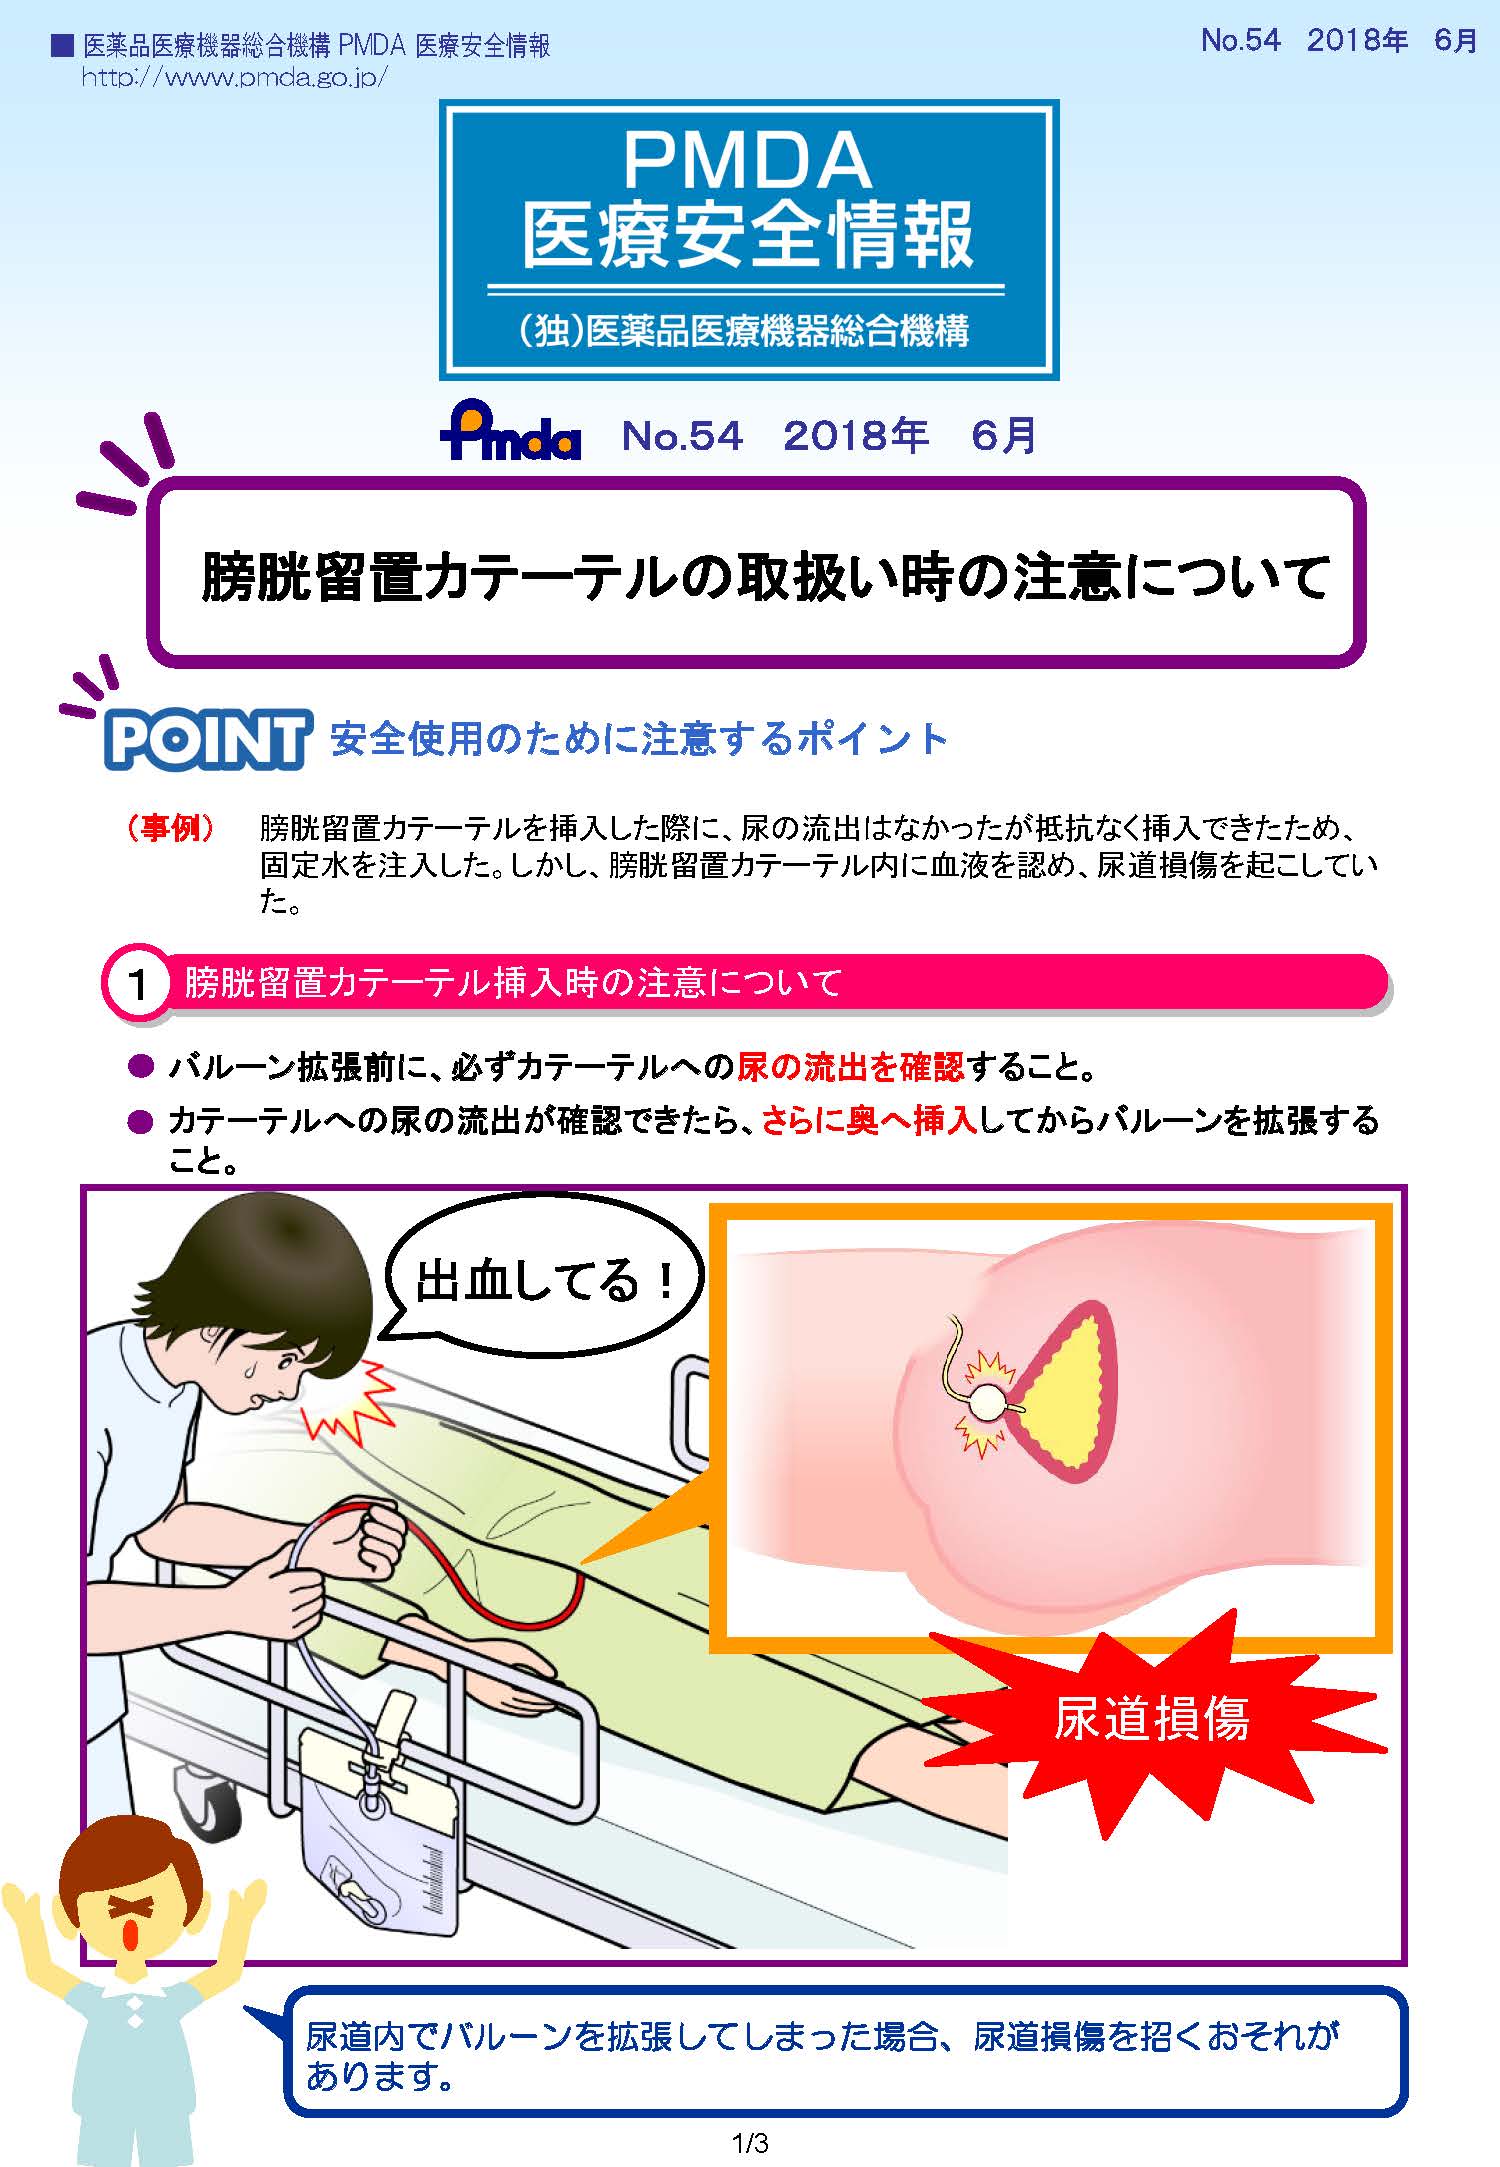 PMDA医療安全情報 No.54　膀胱留置カテーテルの取扱い時の注意について　の1枚目のイメージ画像です。クリックするとPDFファイル（594.55KB）が開きます。